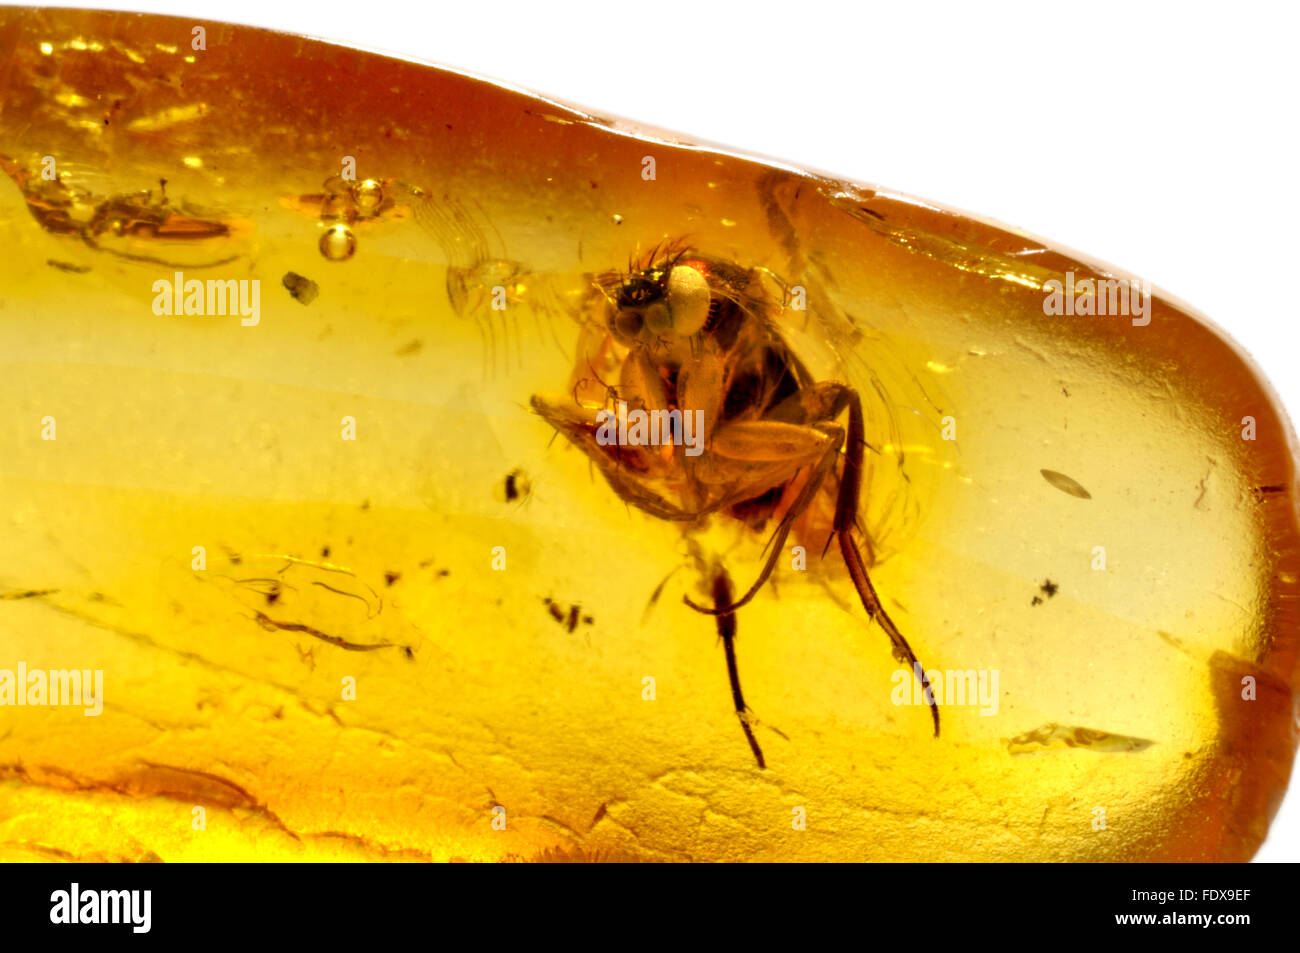 Fly preistorici conservati in ambra baltica (45-55 milioni di anni) volare 4-5mm Foto Stock